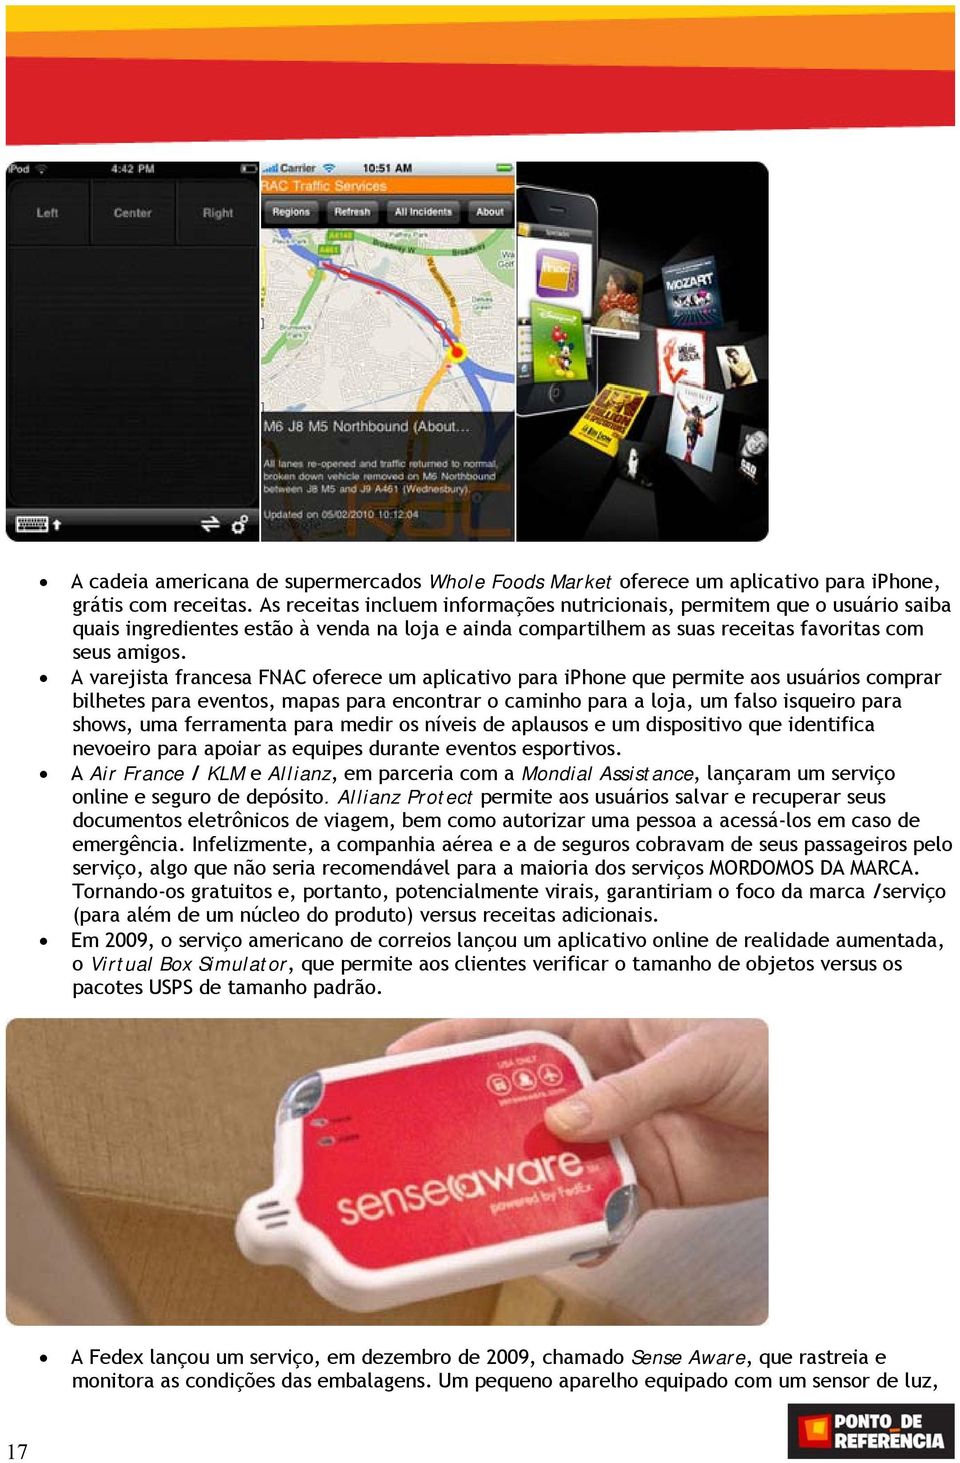 A varejista francesa FNAC oferece um aplicativo para iphone que permite aos usuários comprar bilhetes para eventos, mapas para encontrar o caminho para a loja, um falso isqueiro para shows, uma